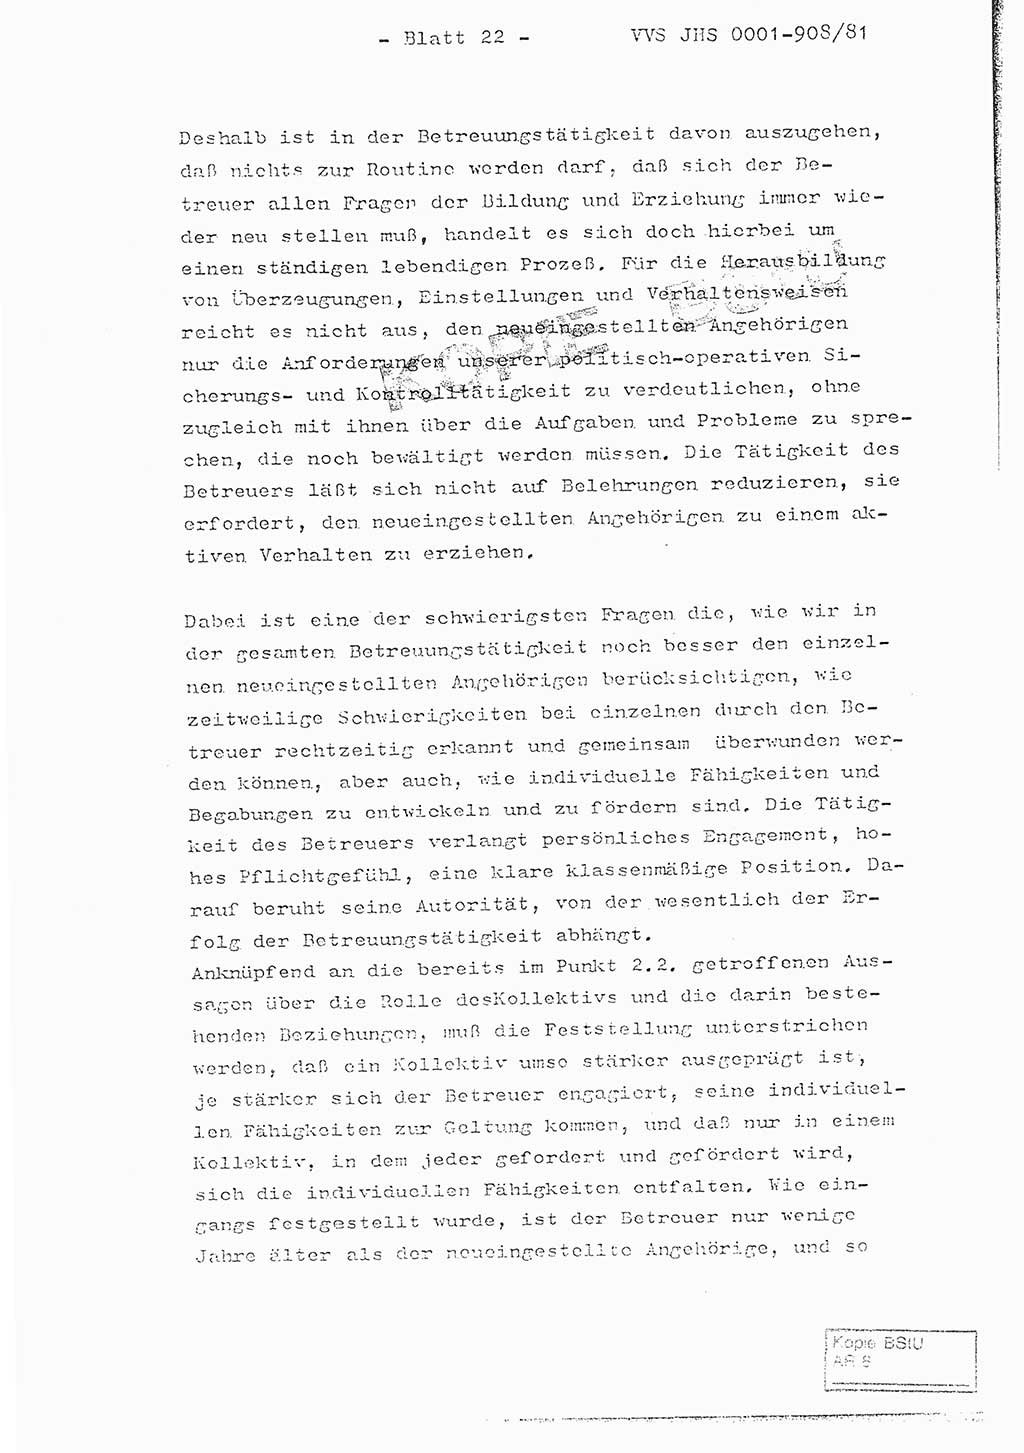 Fachschulabschlußarbeit Oberleutnant Wolfgang Wittmann (Abt. ⅩⅣ), Ministerium für Staatssicherheit (MfS) [Deutsche Demokratische Republik (DDR)], Juristische Hochschule (JHS), Vertrauliche Verschlußsache (VVS) o001-908/82, Potsdam 1982, Blatt 22 (FS-Abschl.-Arb. MfS DDR JHS VVS o001-908/82 1982, Bl. 22)